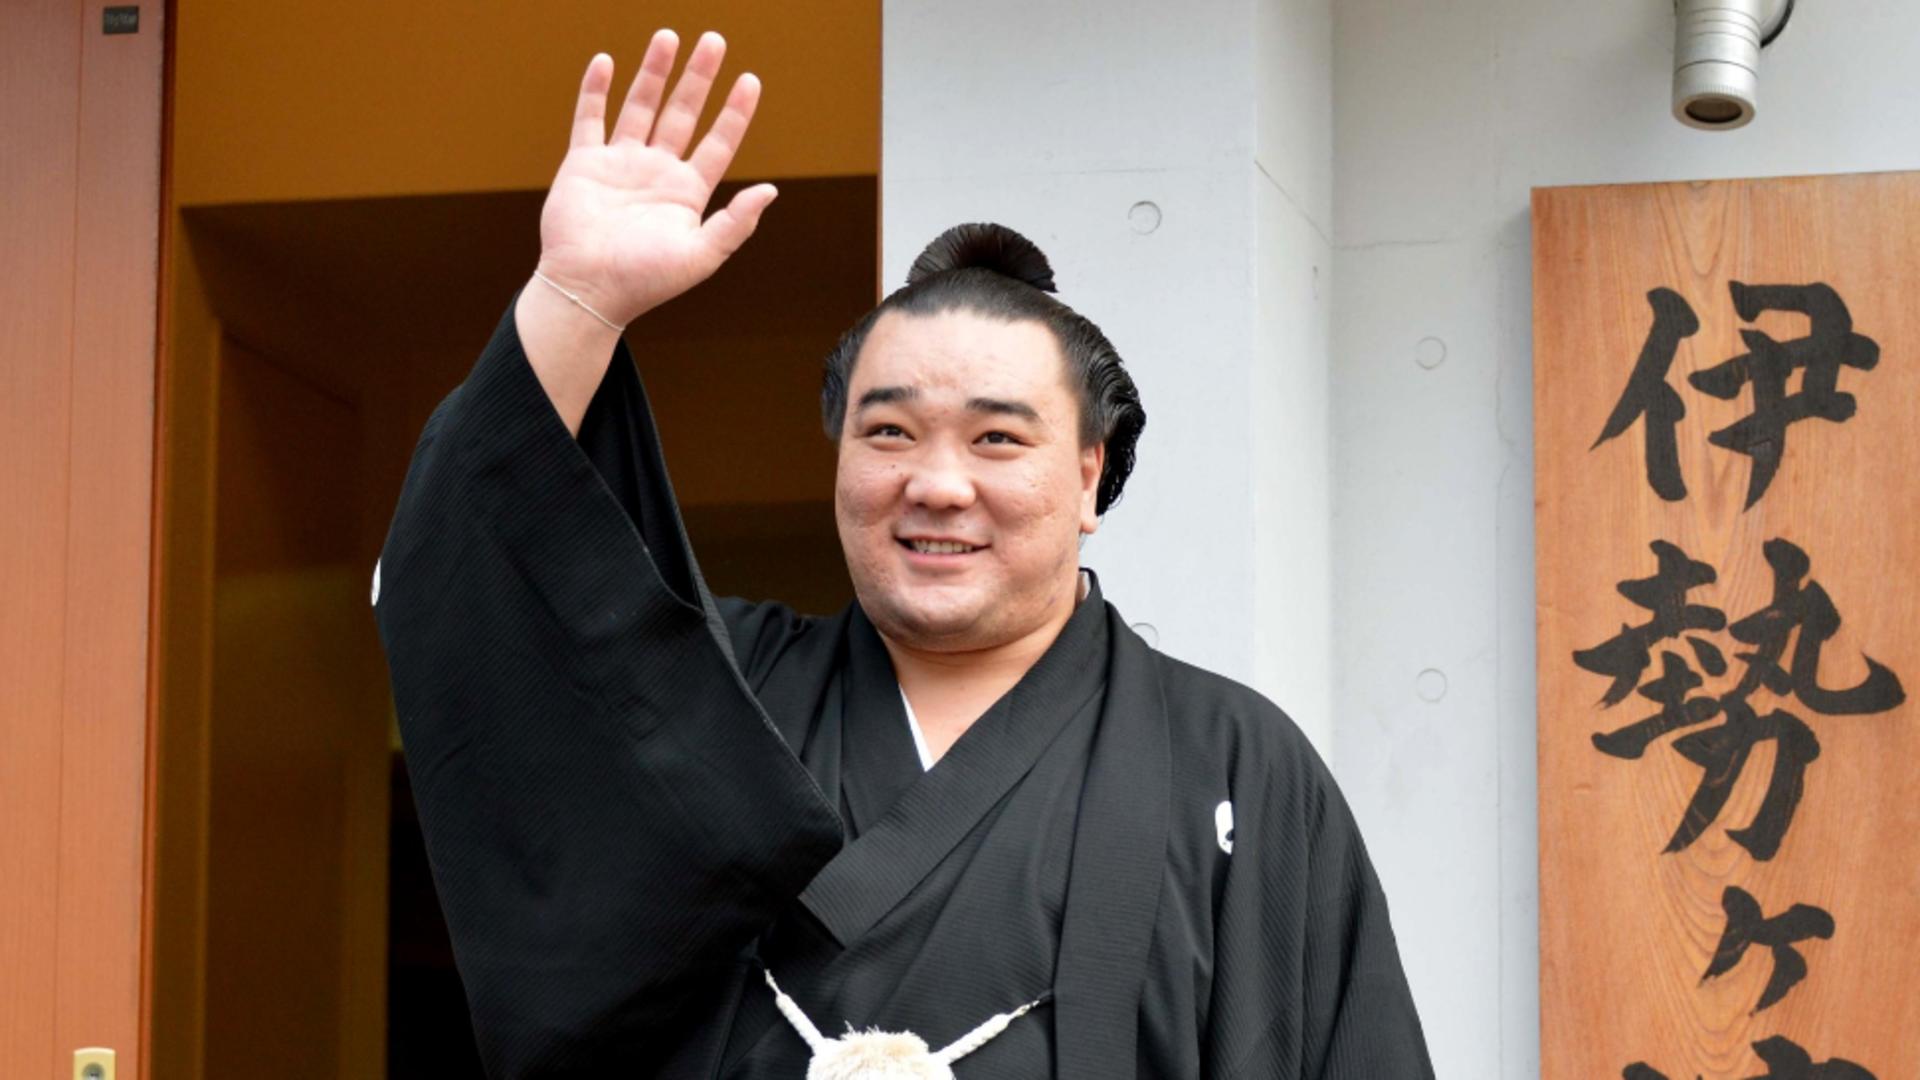 Doliu în sport! Akebono, primul mare campion de sumo născut în străinătate, a murit la vârsta de 54 de ani. Bărbatul era renumit și datorită fizicului său impunător